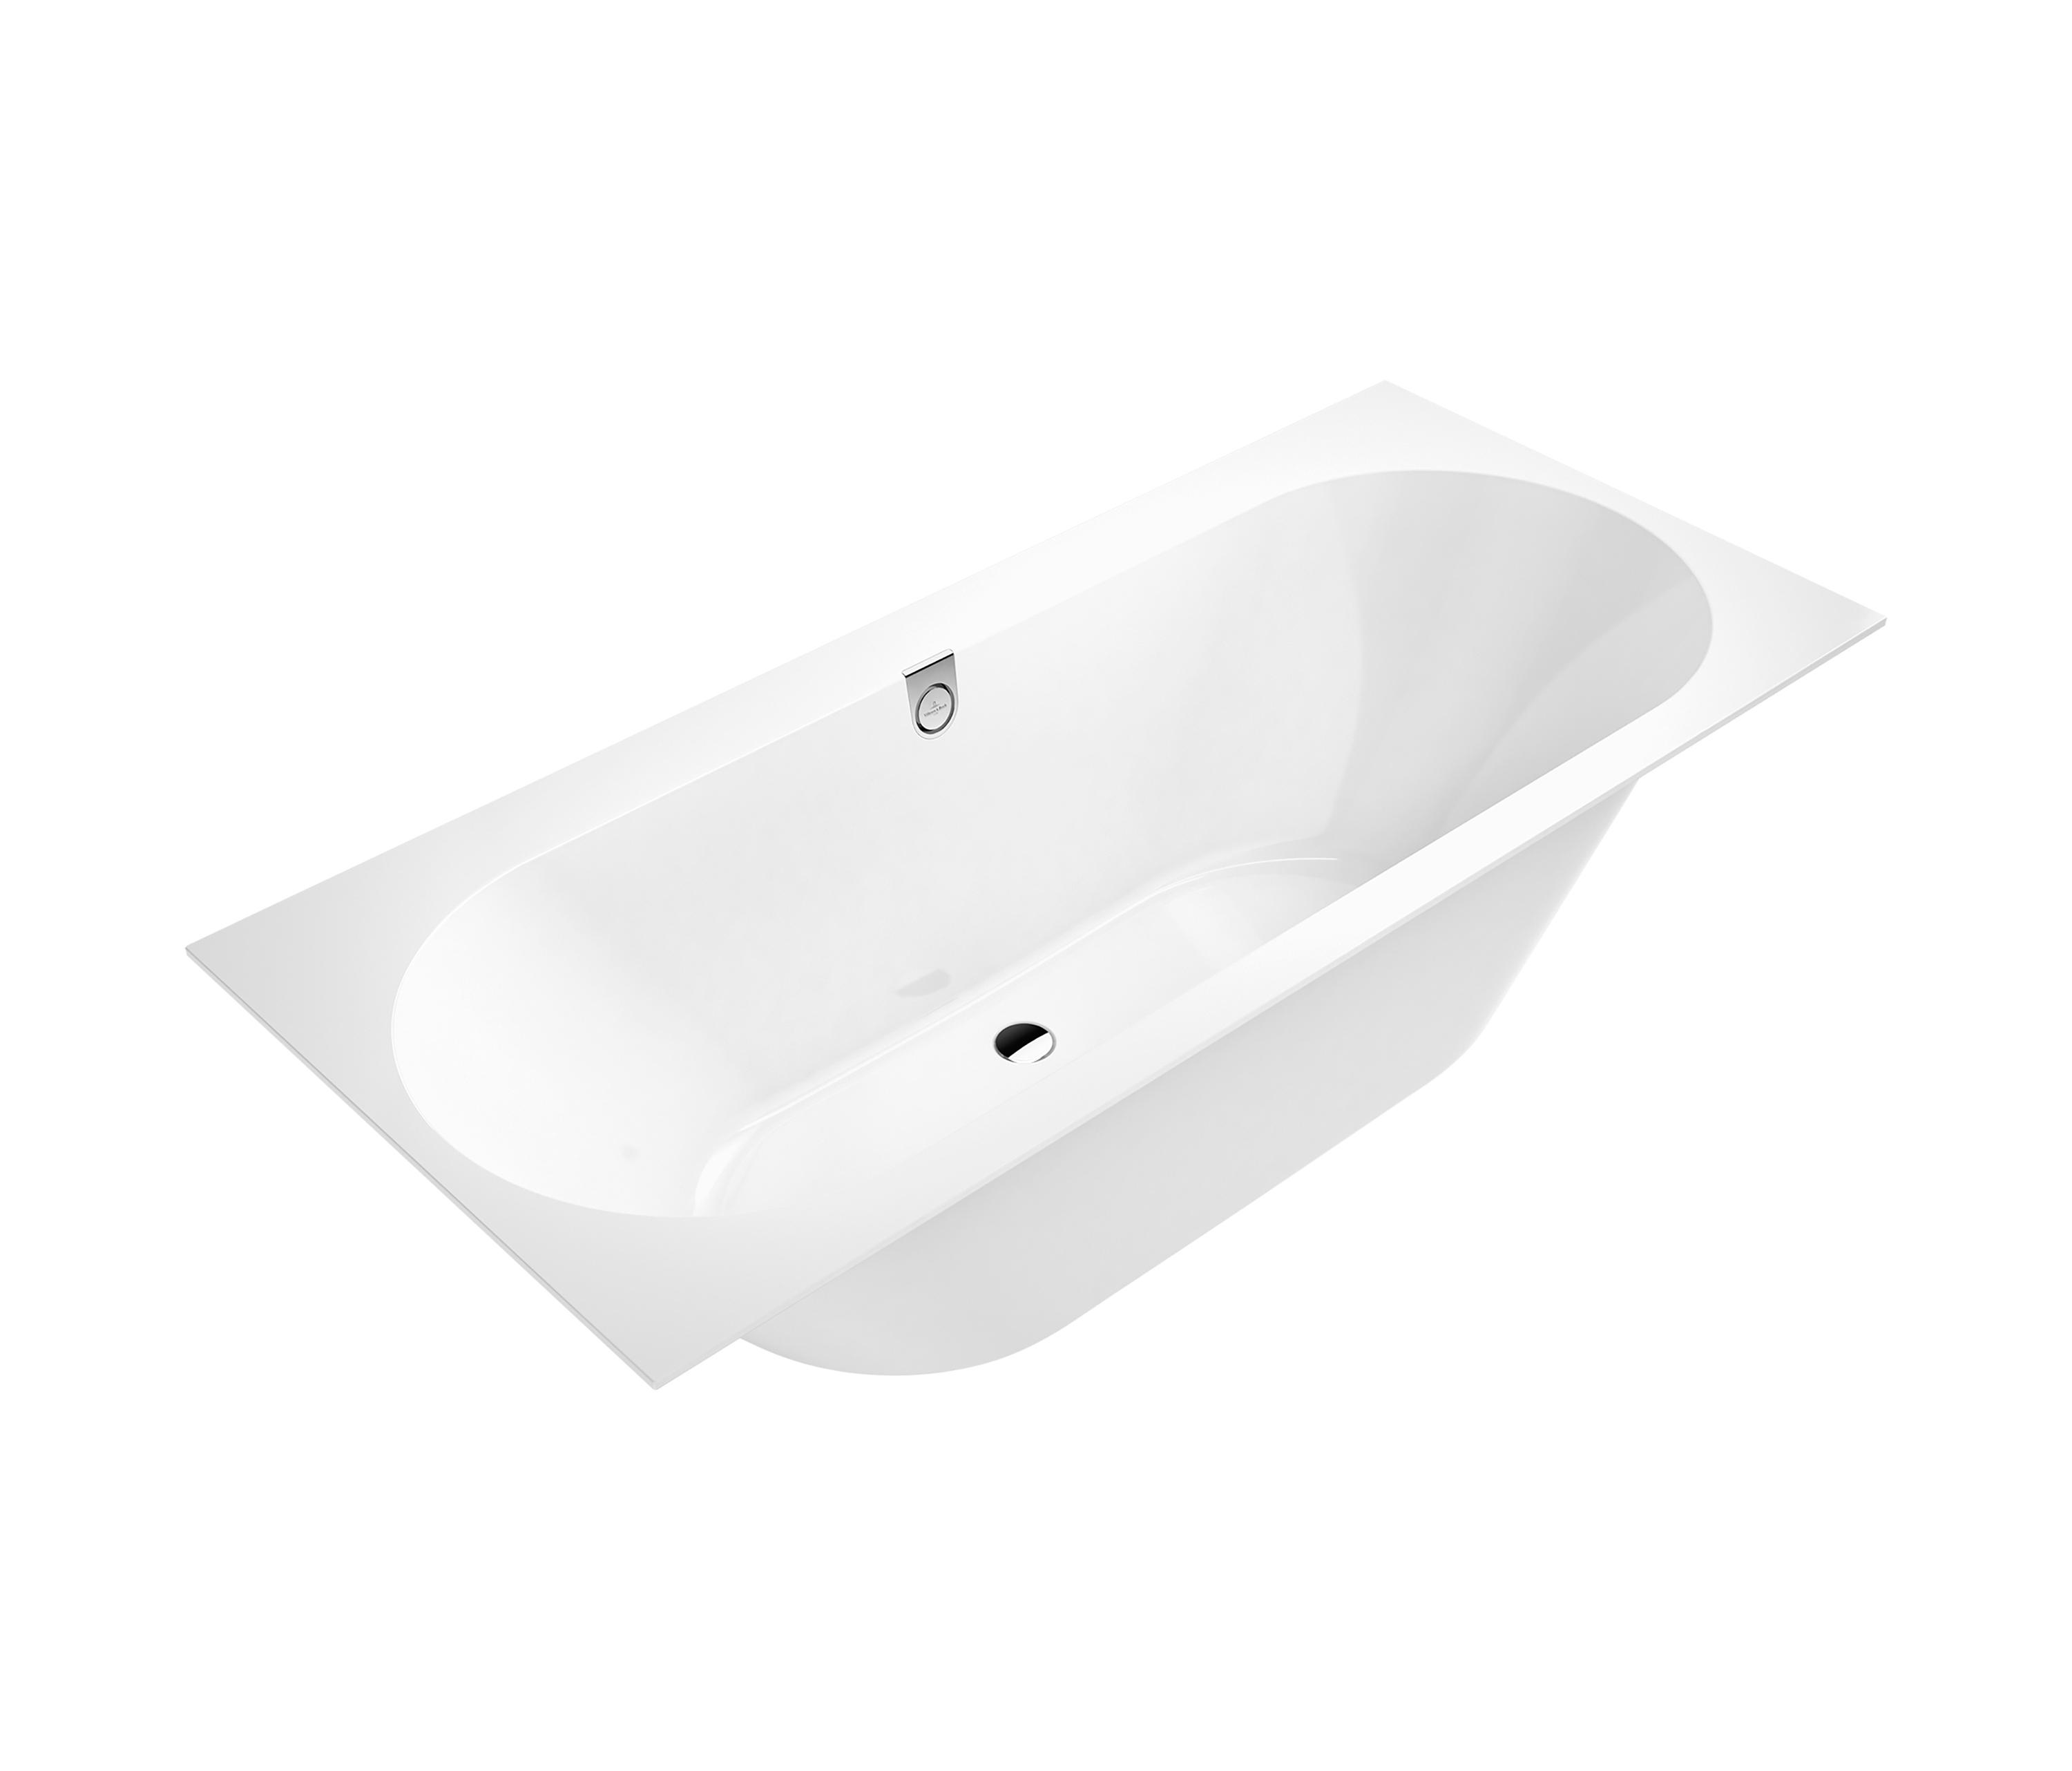 Slink Geruststellen voorbeeld Oberon 2.0 Bath & designer furniture | Architonic